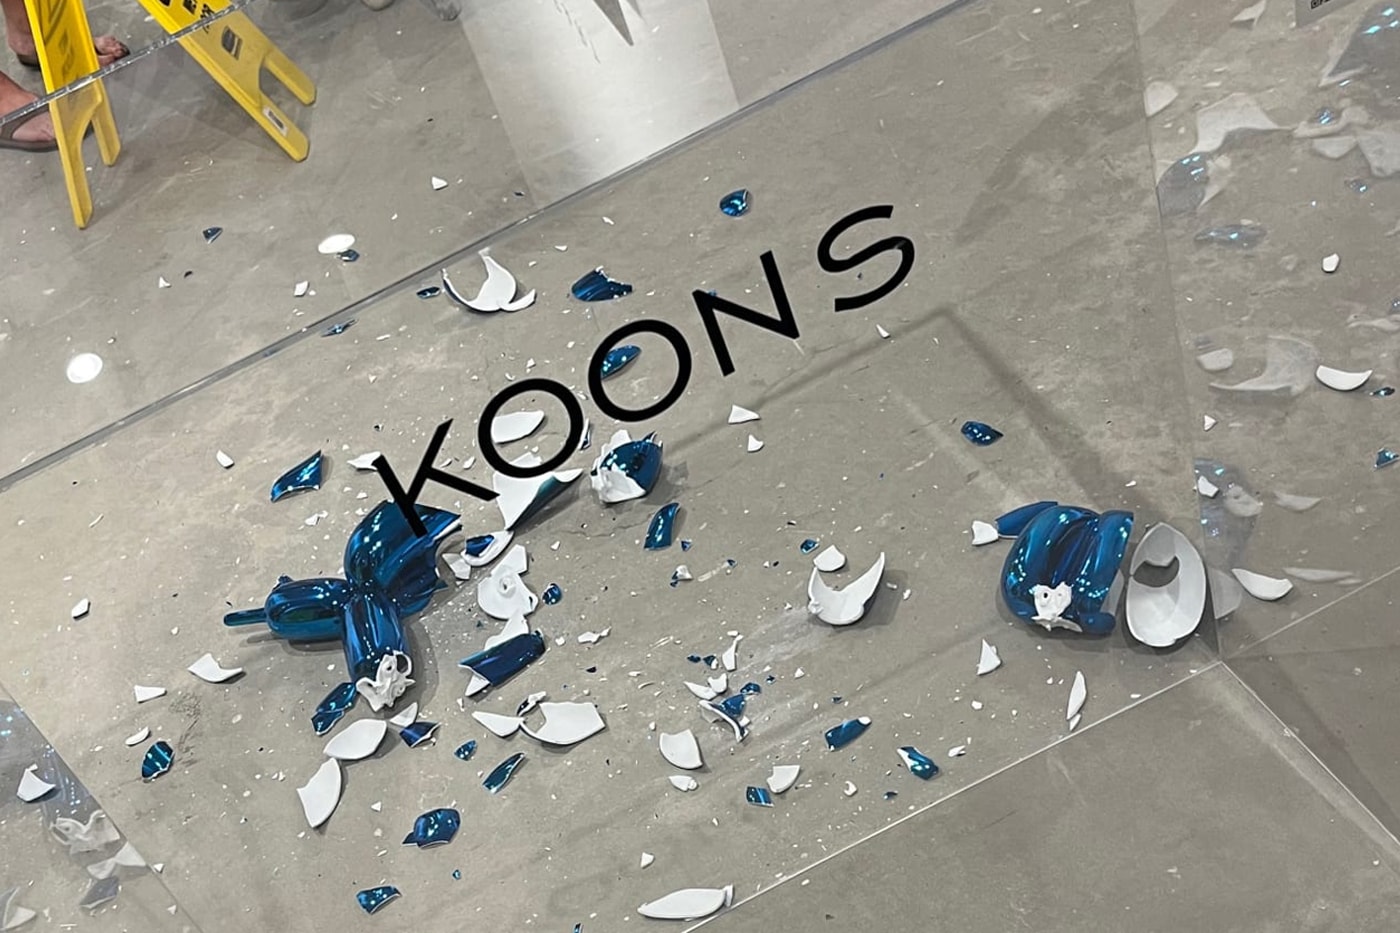 當代藝術家 Jeff Koons  要價 $42,000 美元「Balloon Dog」雕塑展覽中意外摔成碎片